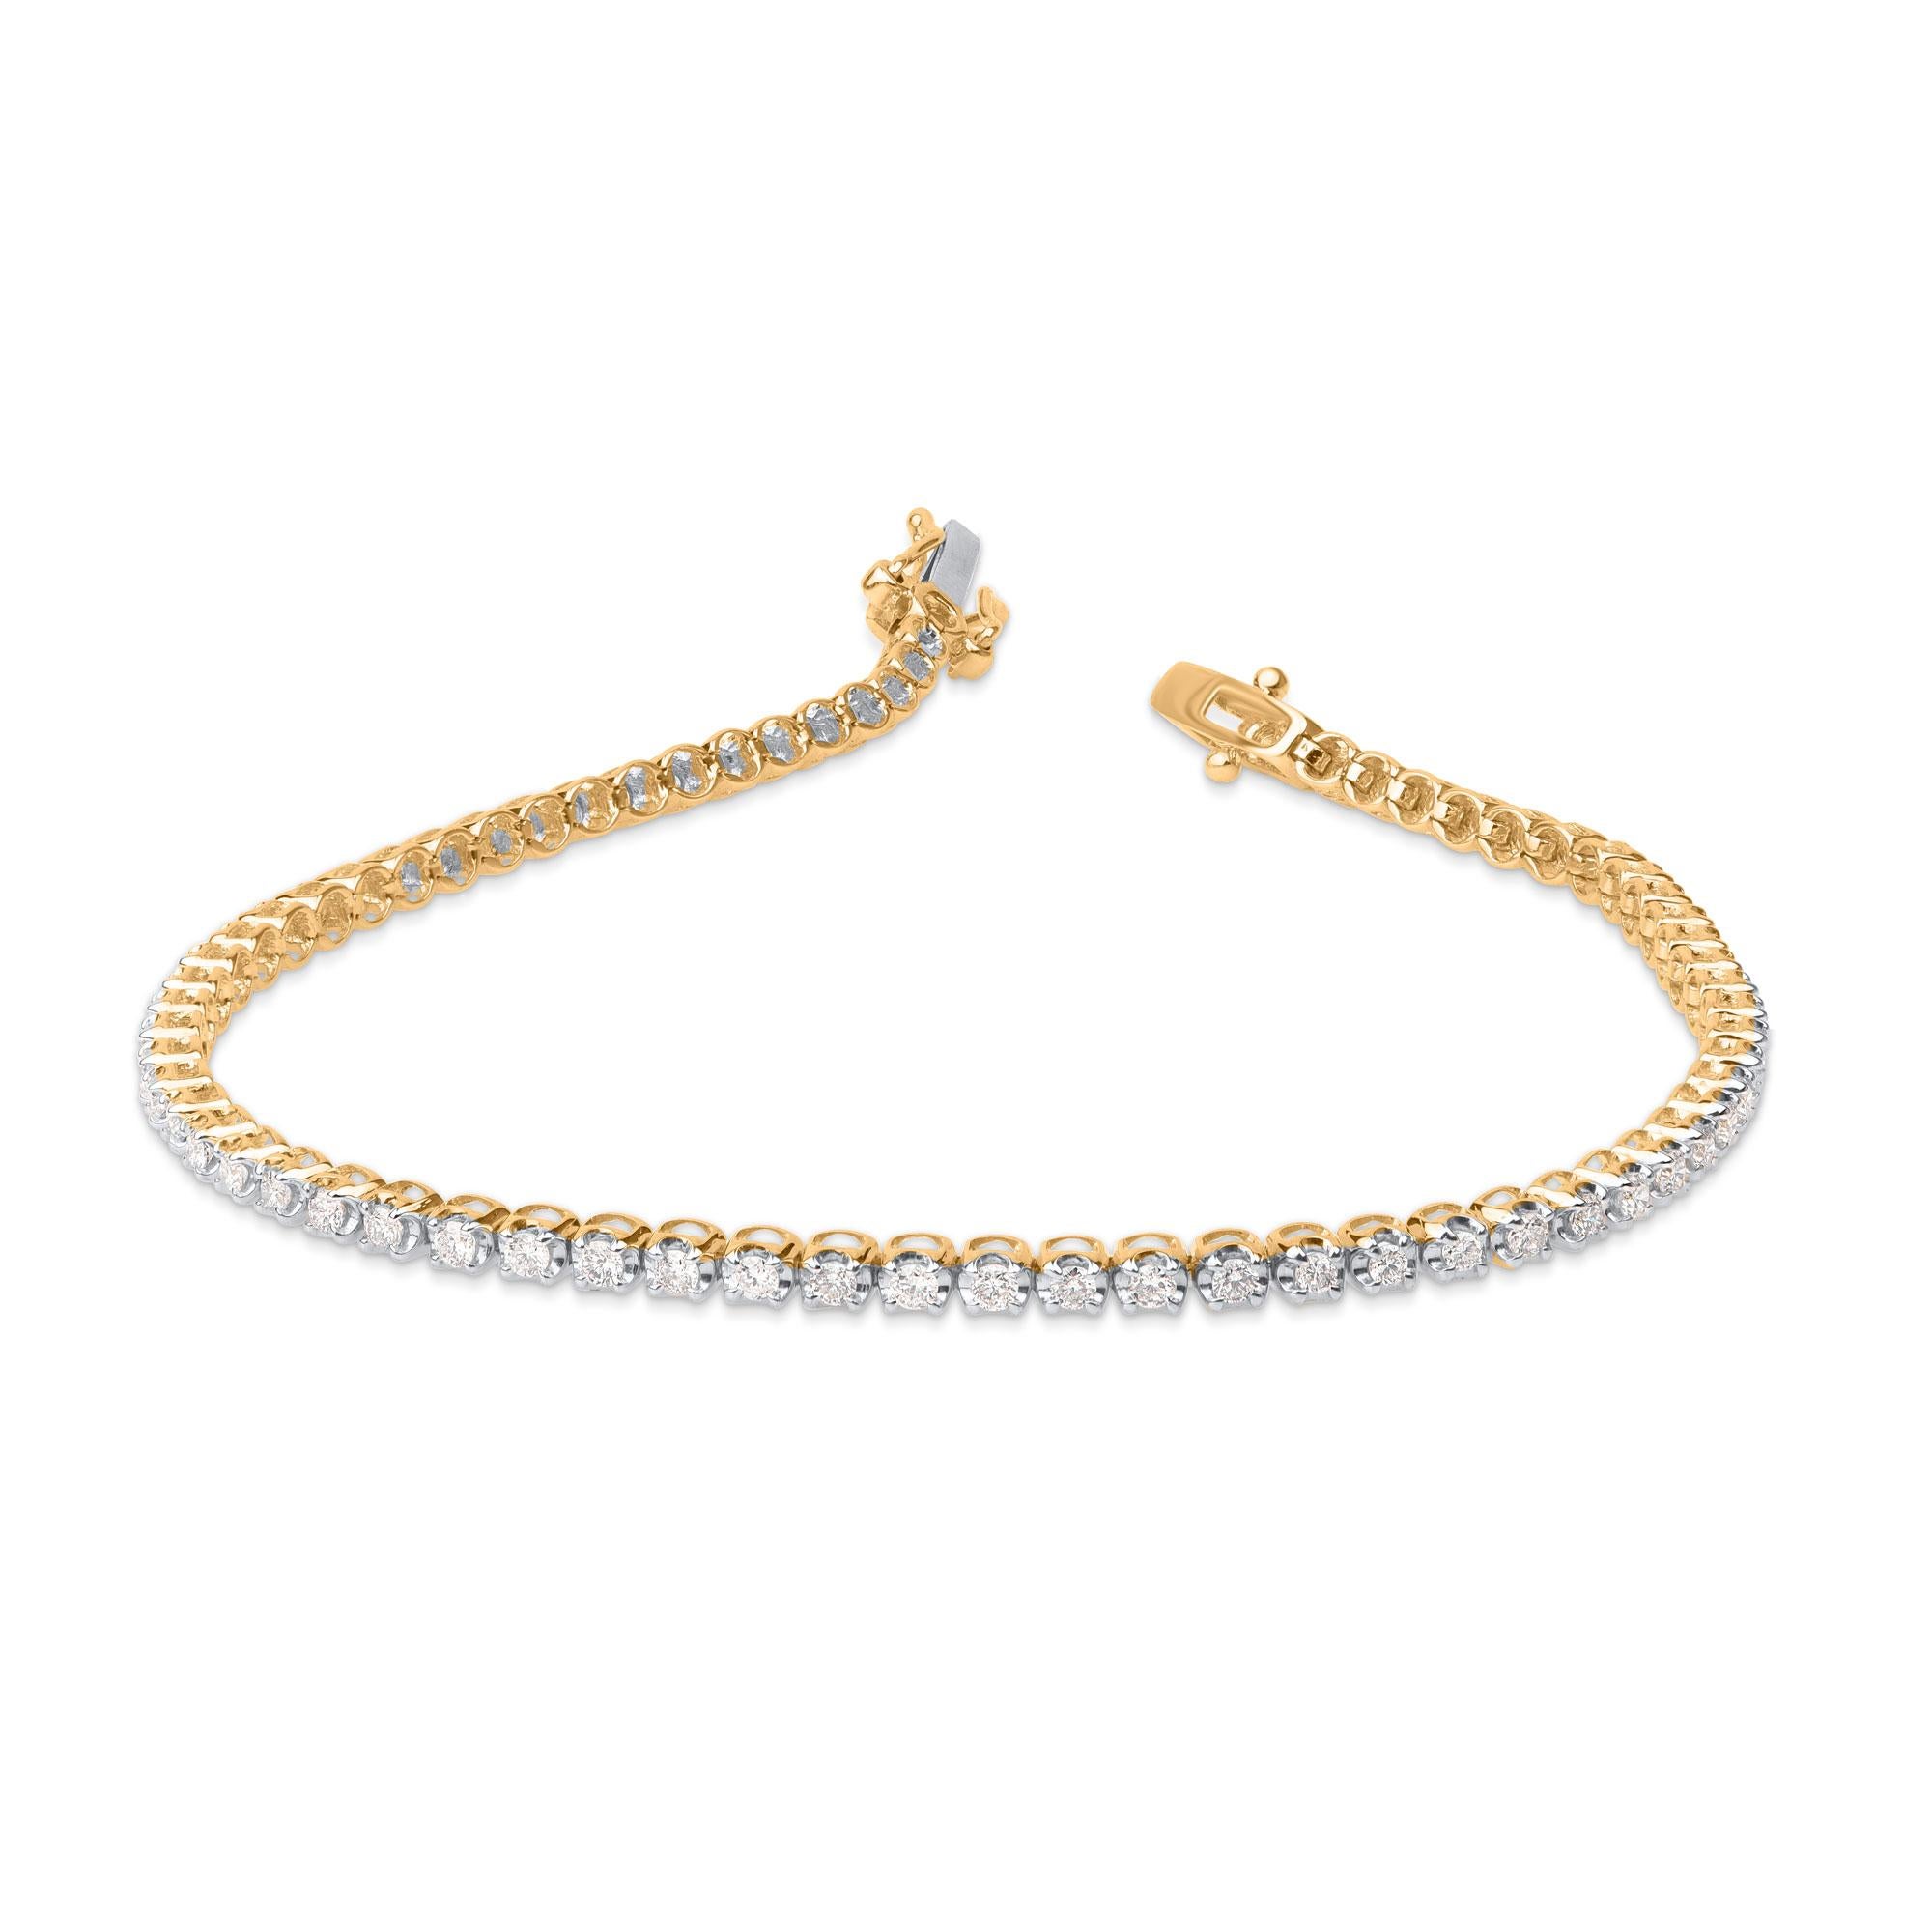 Un bracelet de tennis classique - un accessoire parfait pour les femmes avec des tenues de tous les jours. Élégamment conçu en or jaune 10 kt et agrémenté de 72 diamants naturels brillants en sertissage à griffes. Les diamants sont classés par